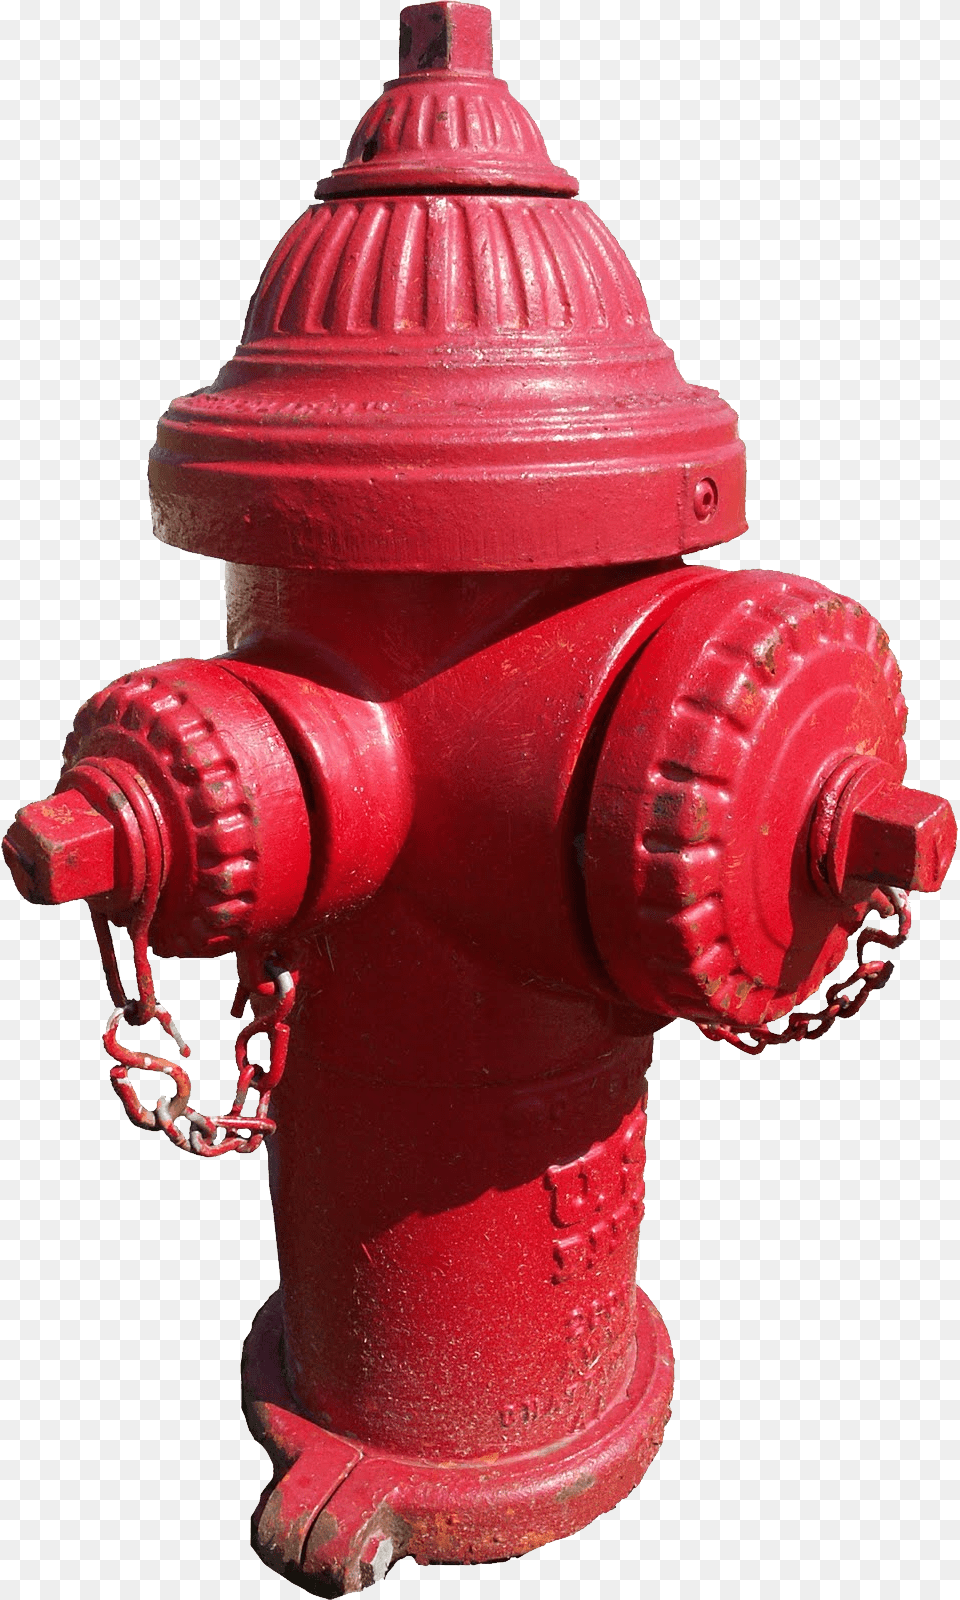 Fire Hydrant Fire Hydrants, Fire Hydrant Free Png